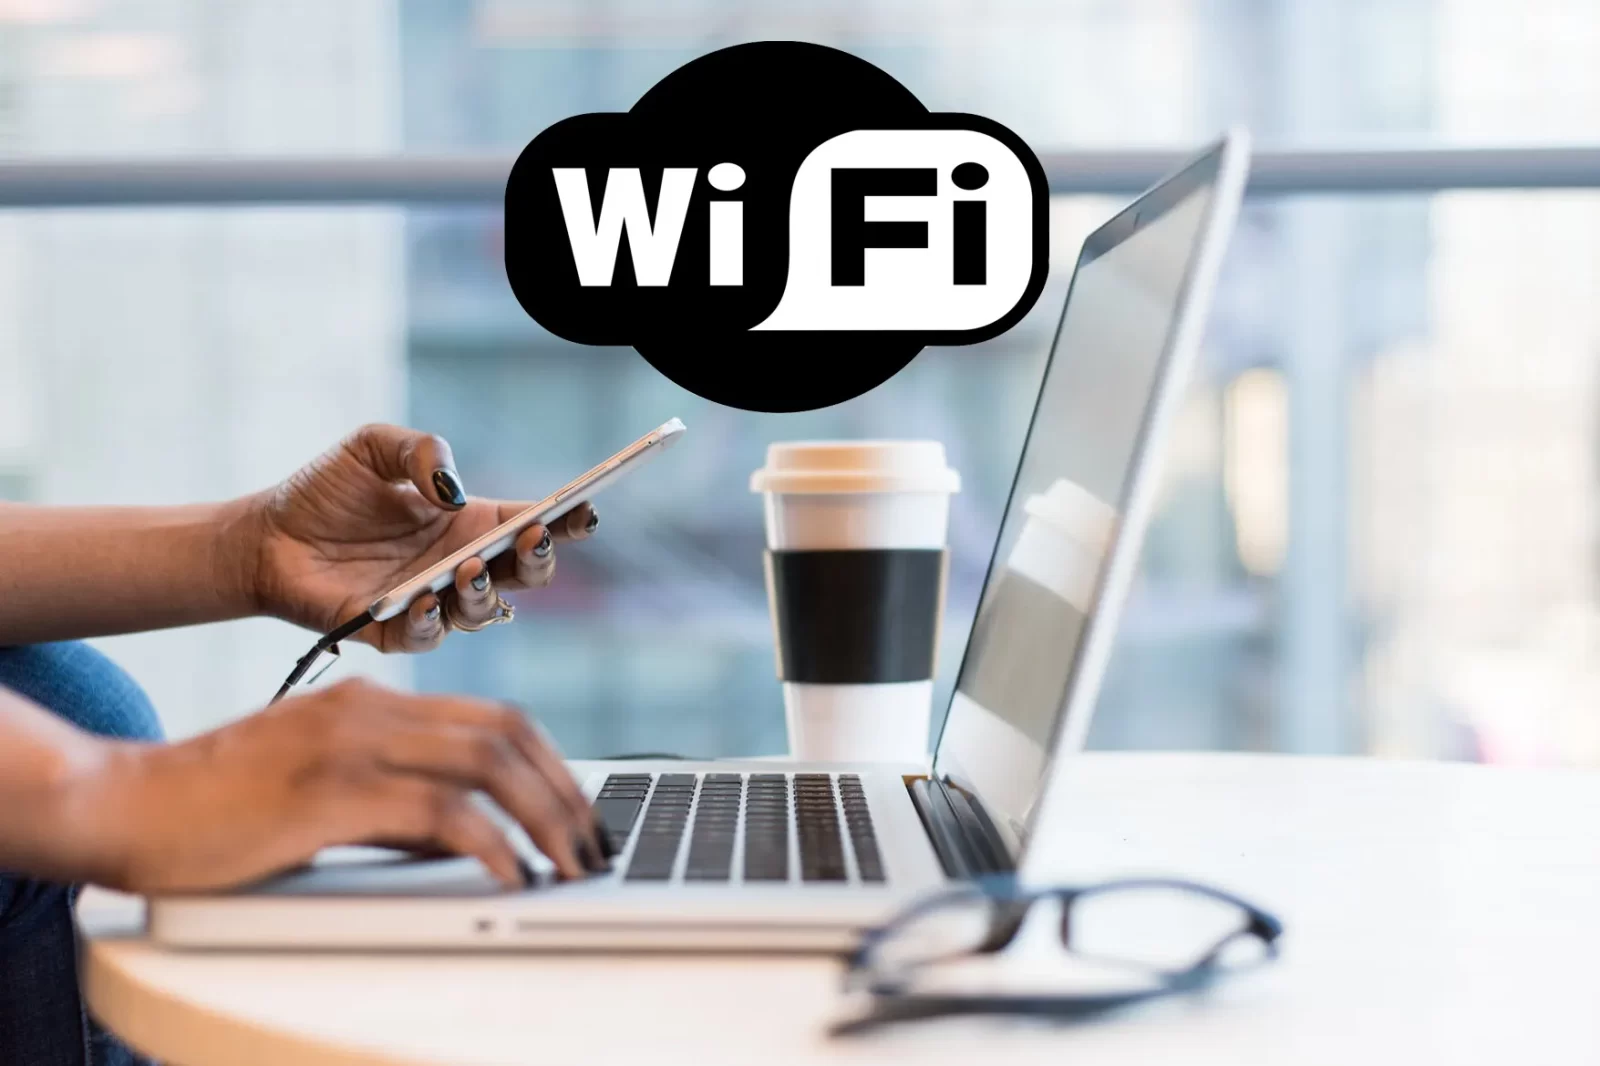 Cara Mempercepat Koneksi Wi-Fi di laptop